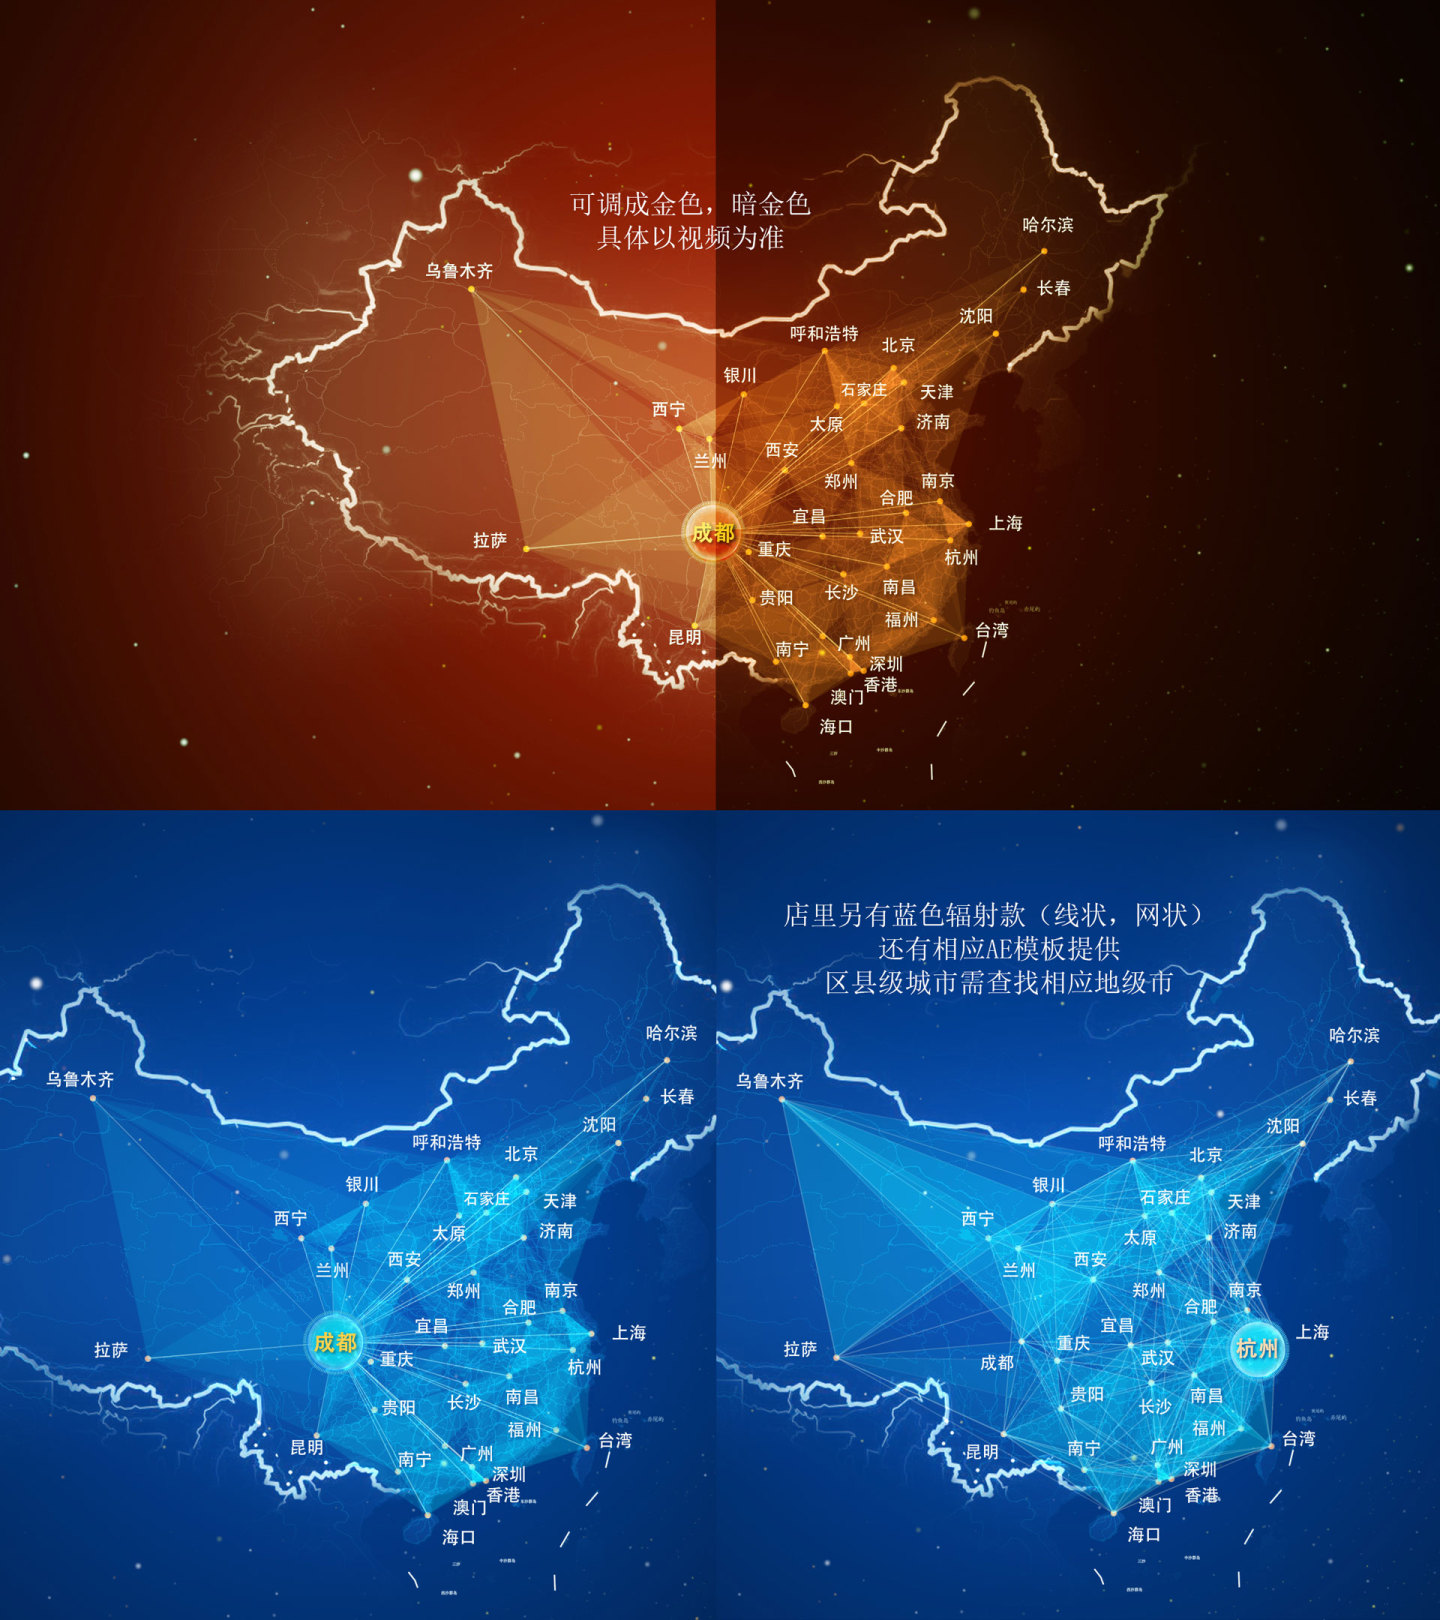 内蒙古 地图辐射 辐射世界 辐射中国